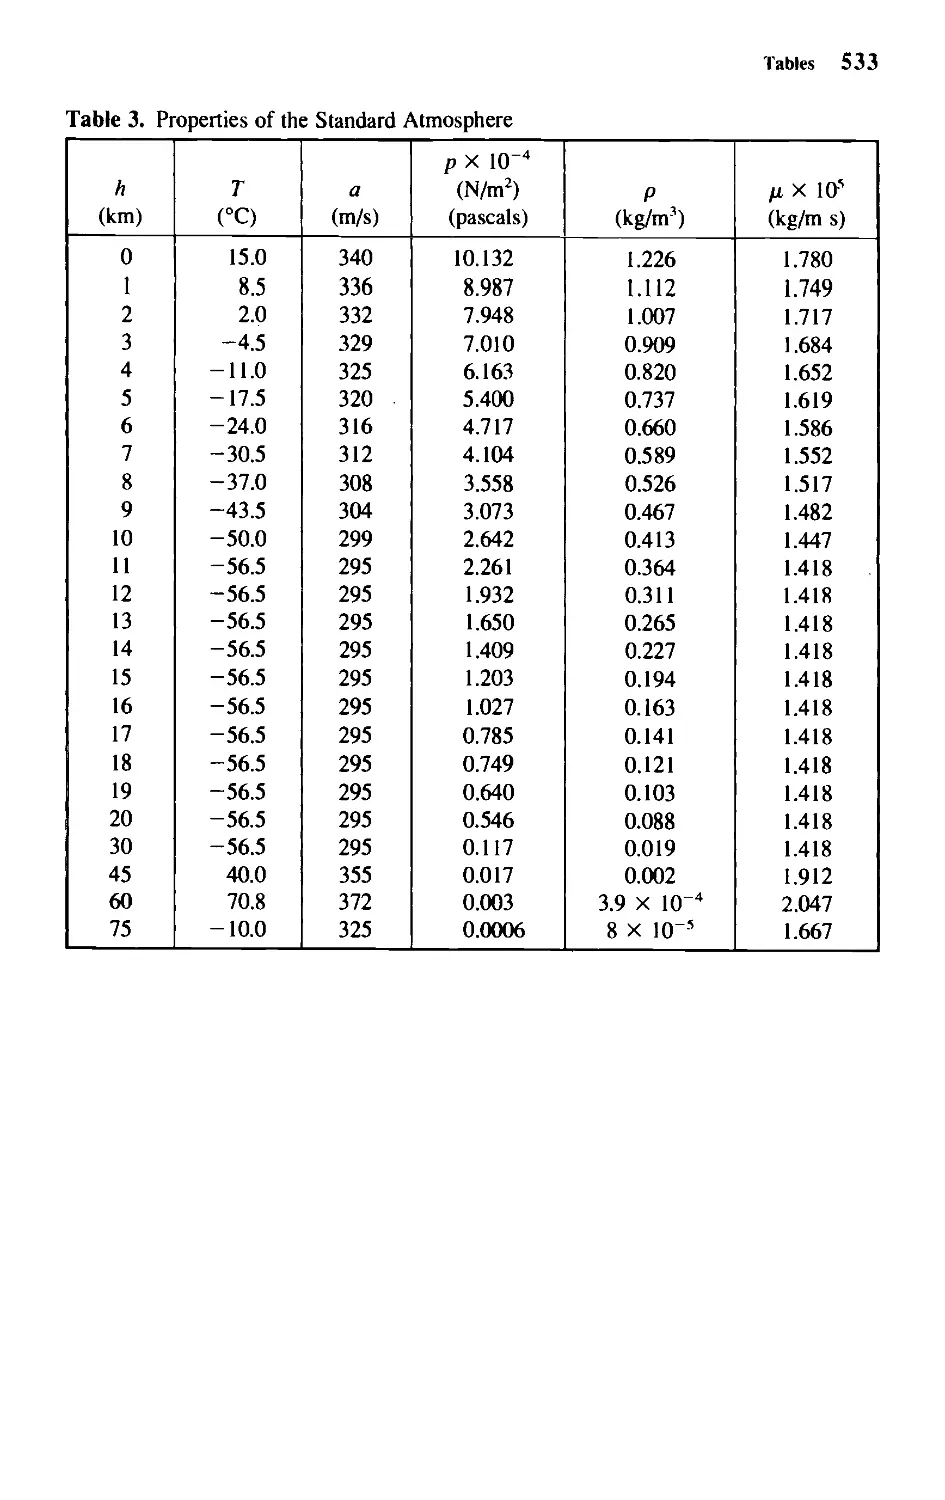 Table 3 - Properties of Standard Atmosphere